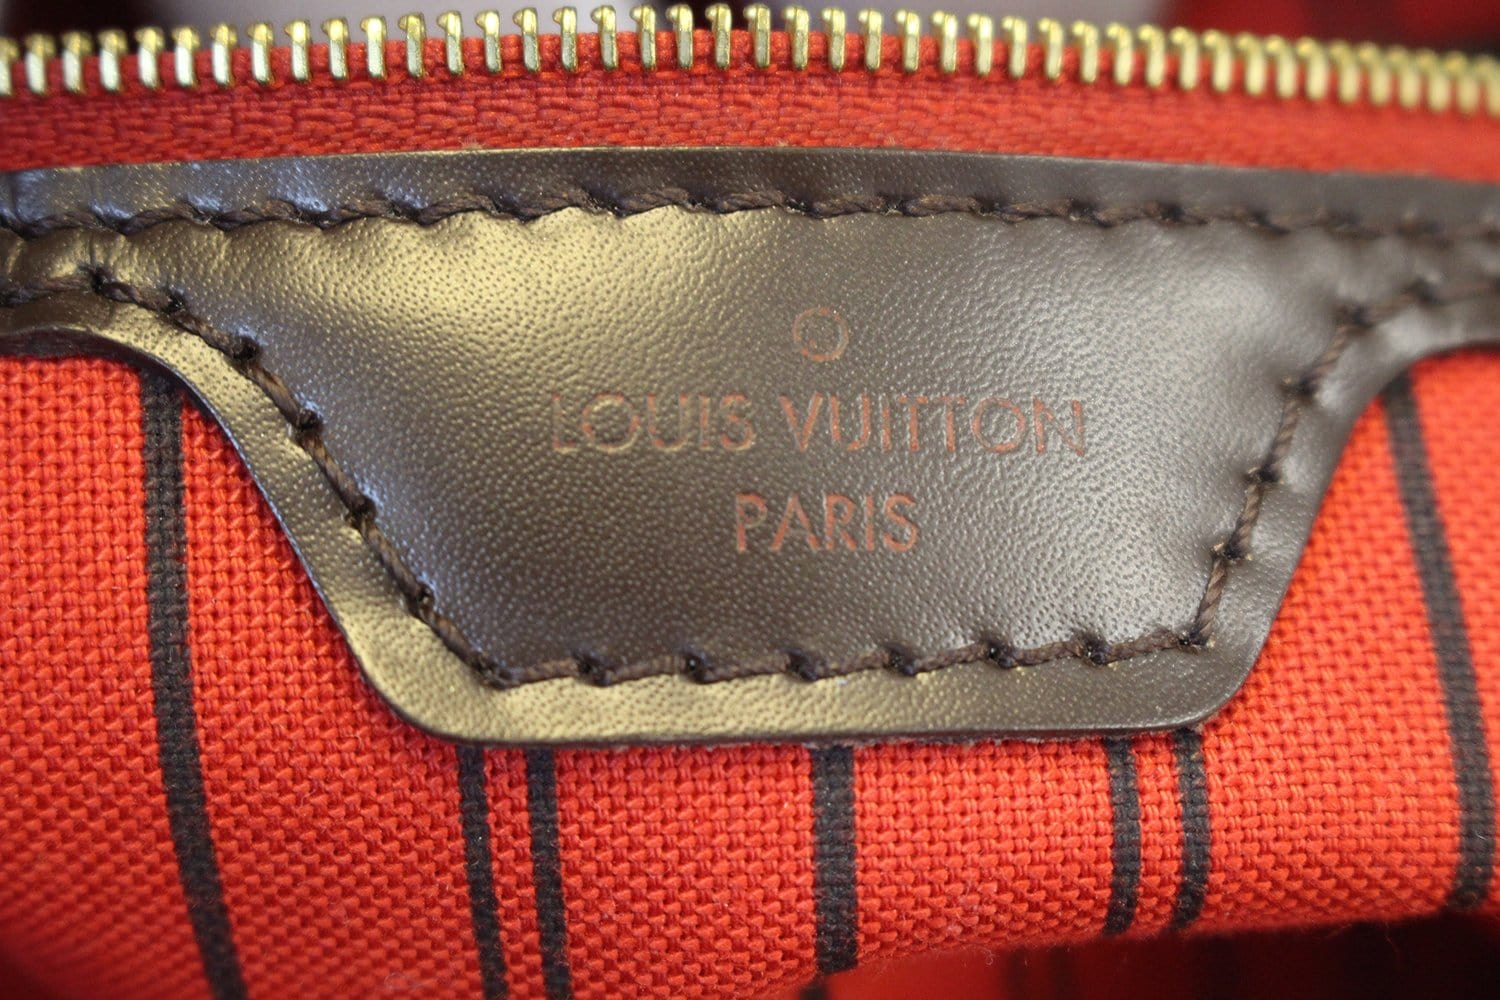 AUTHENTIC Louis Vuitton Delightful Damier Ebene MM PREOWNED (WBA447) – Jj's  Closet, LLC